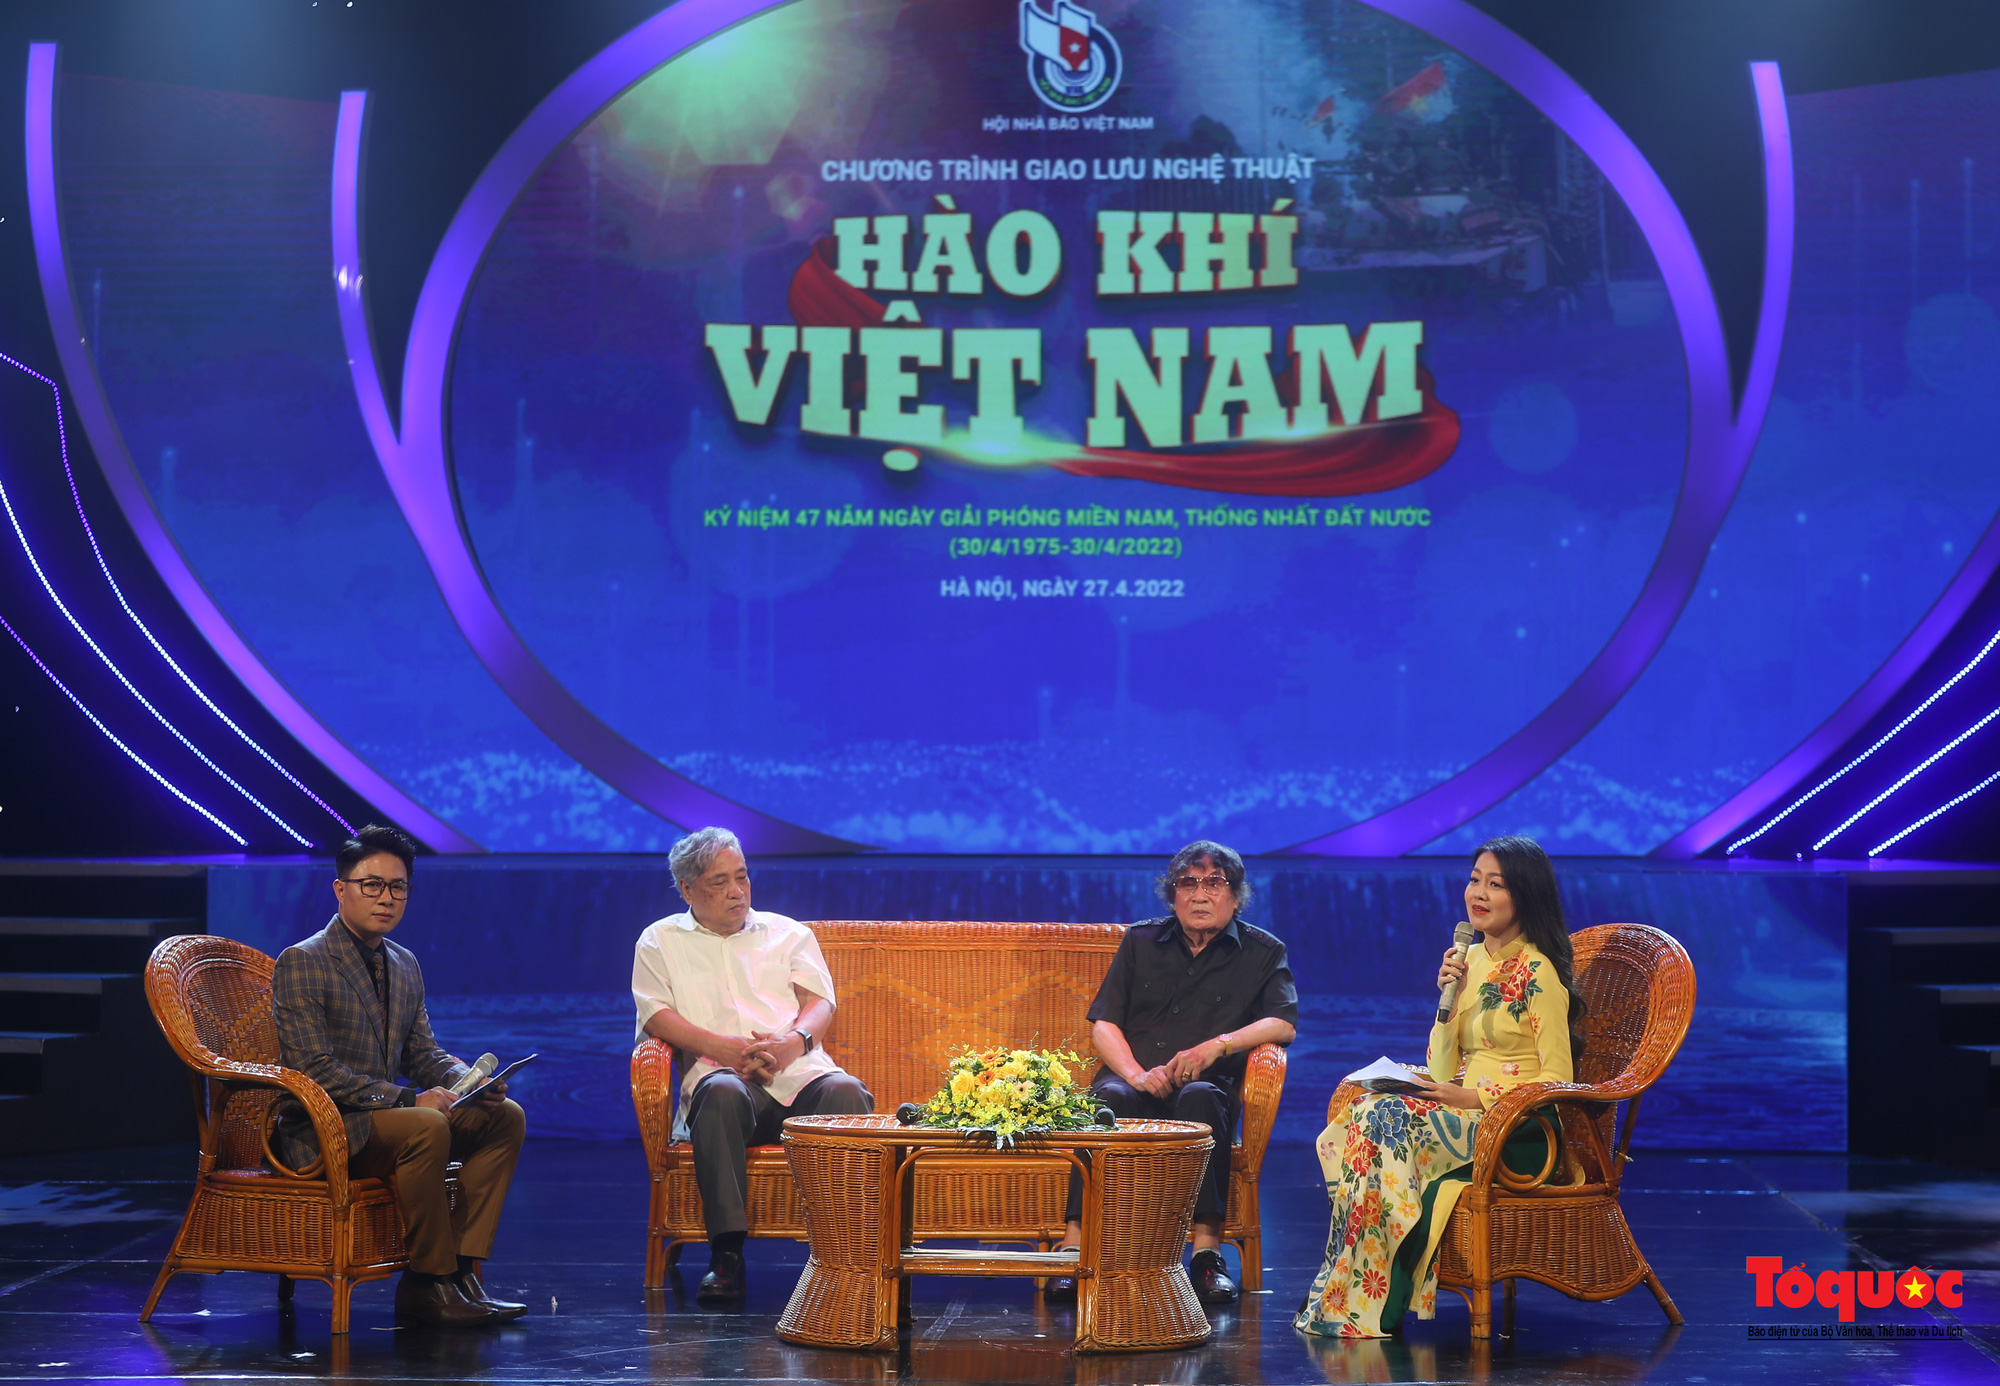 Hào hùng không khí 30/4 trong chương trình nghệ thuật “Hào khí Việt Nam” - Ảnh 5.